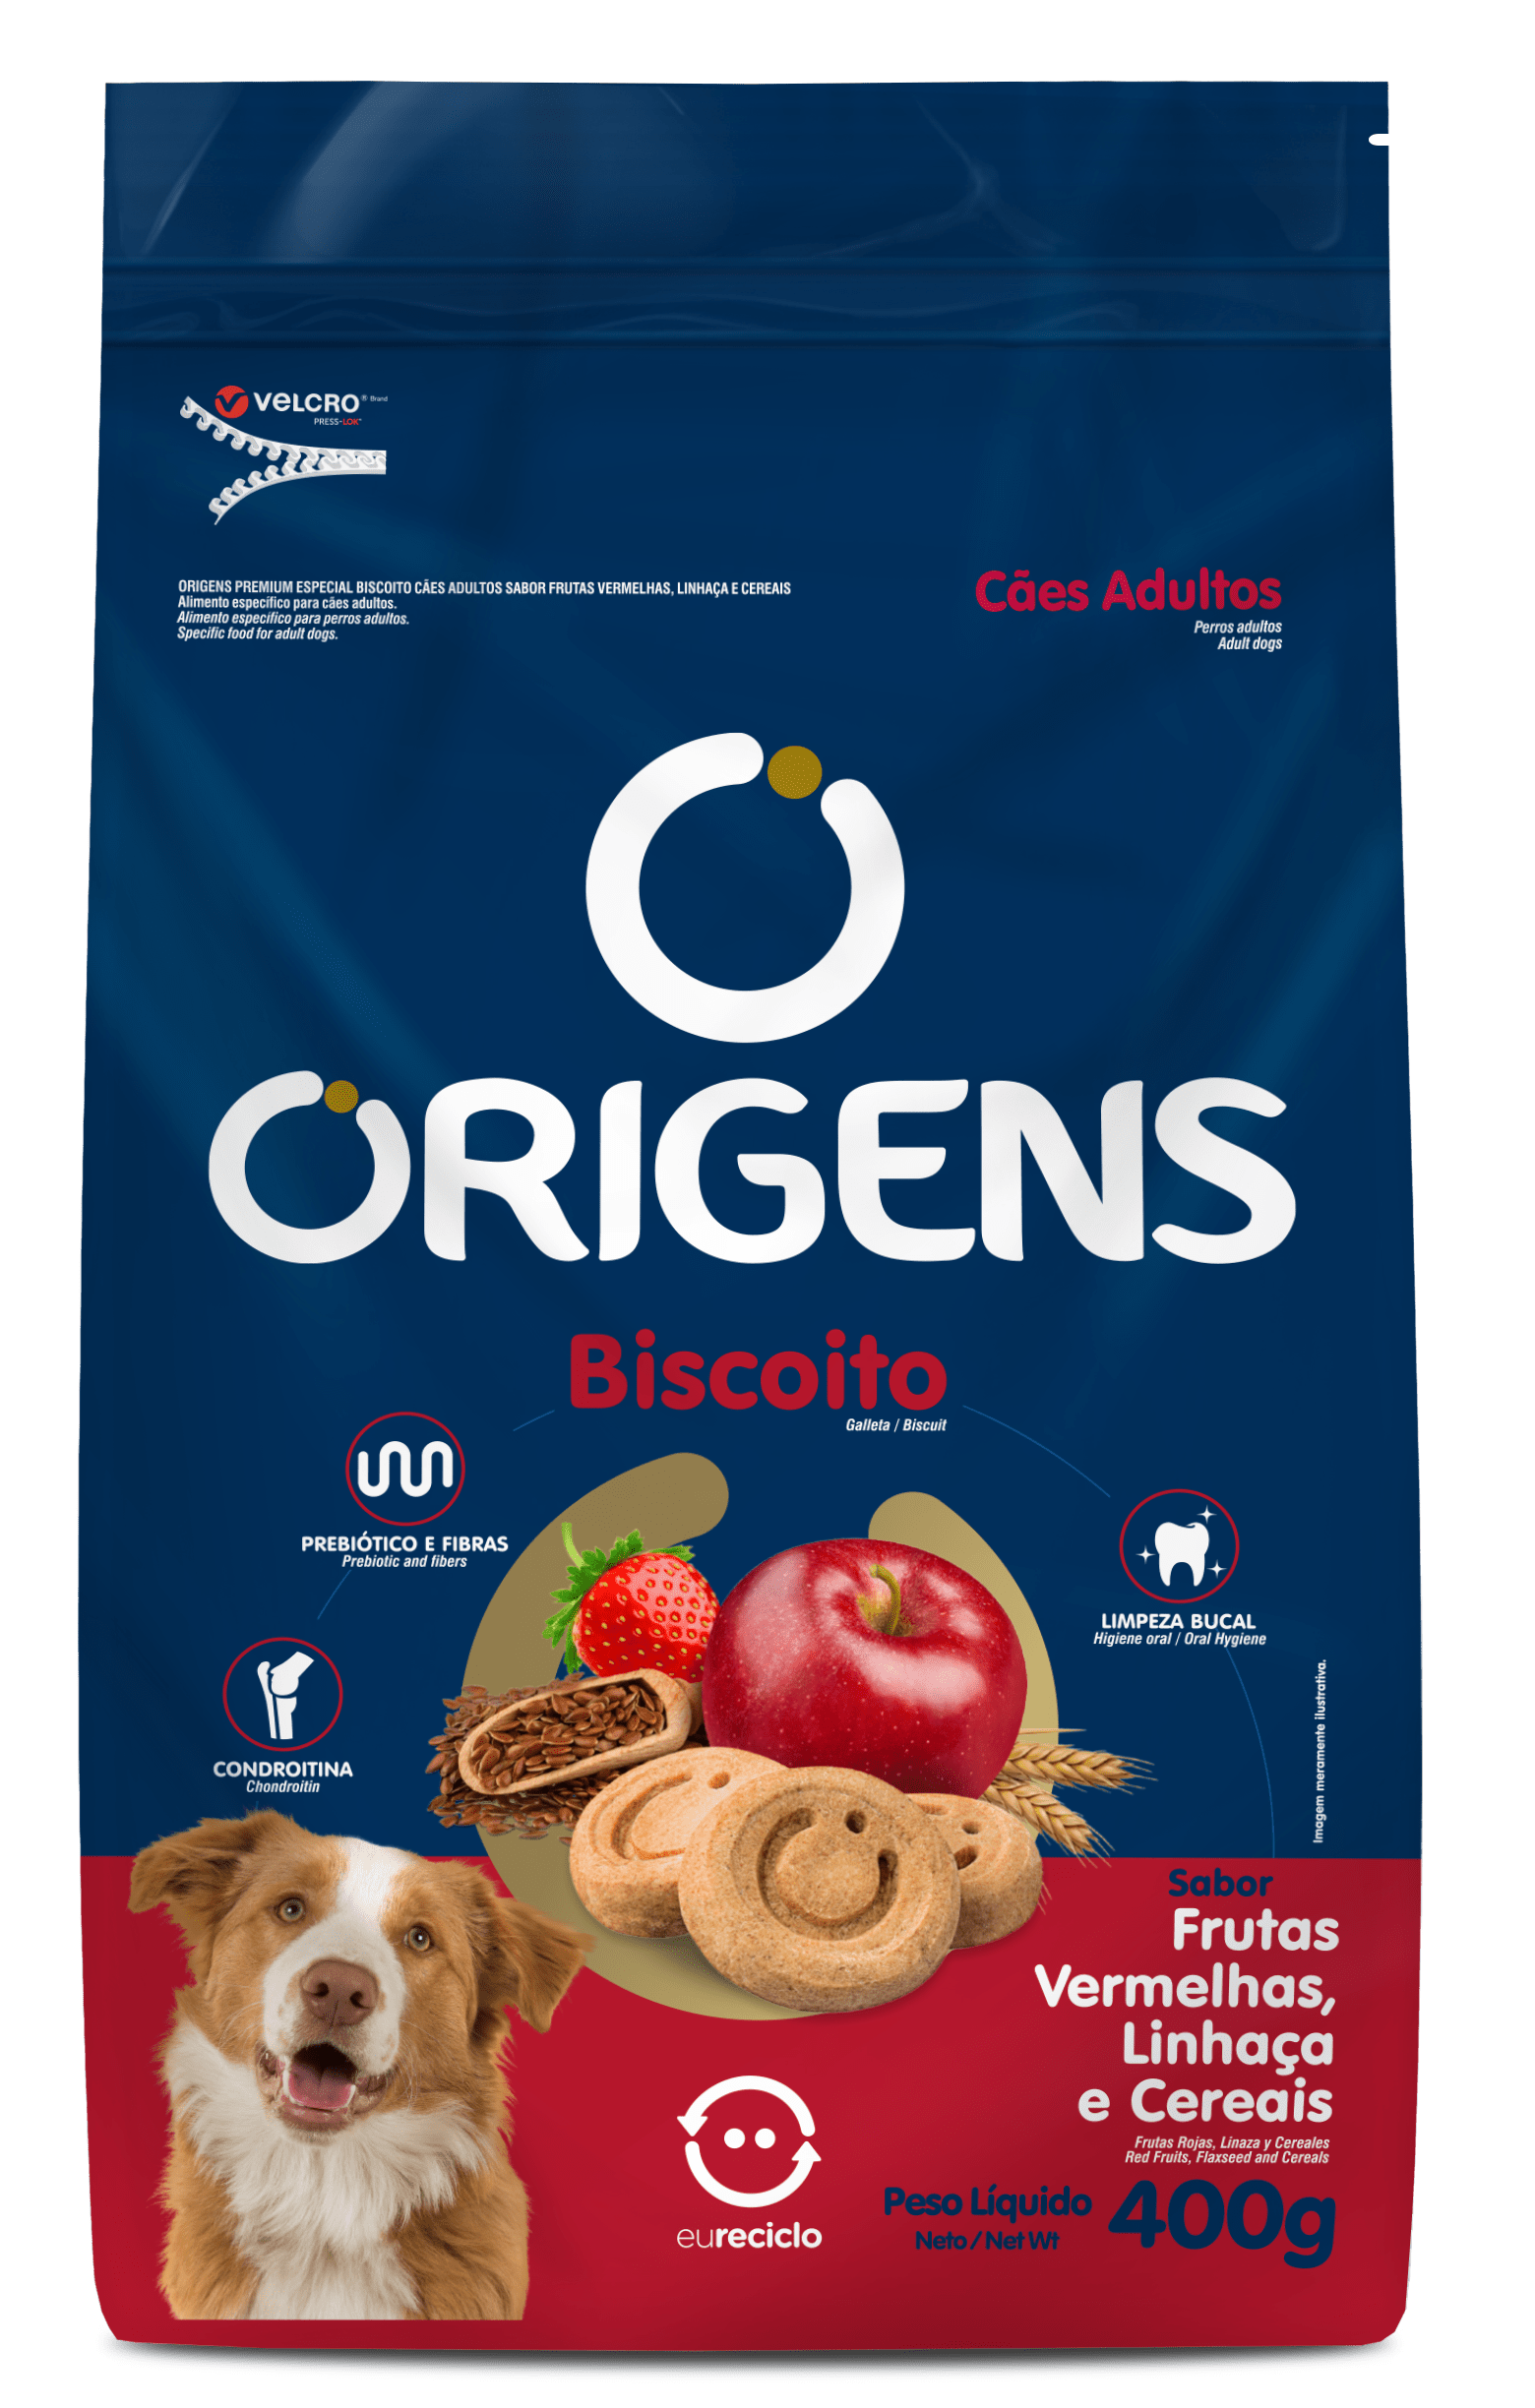 Origens Premium Especial Biscoito Cães Adultos Sabor Frutas Vermelhas, Linhaça e Cereais